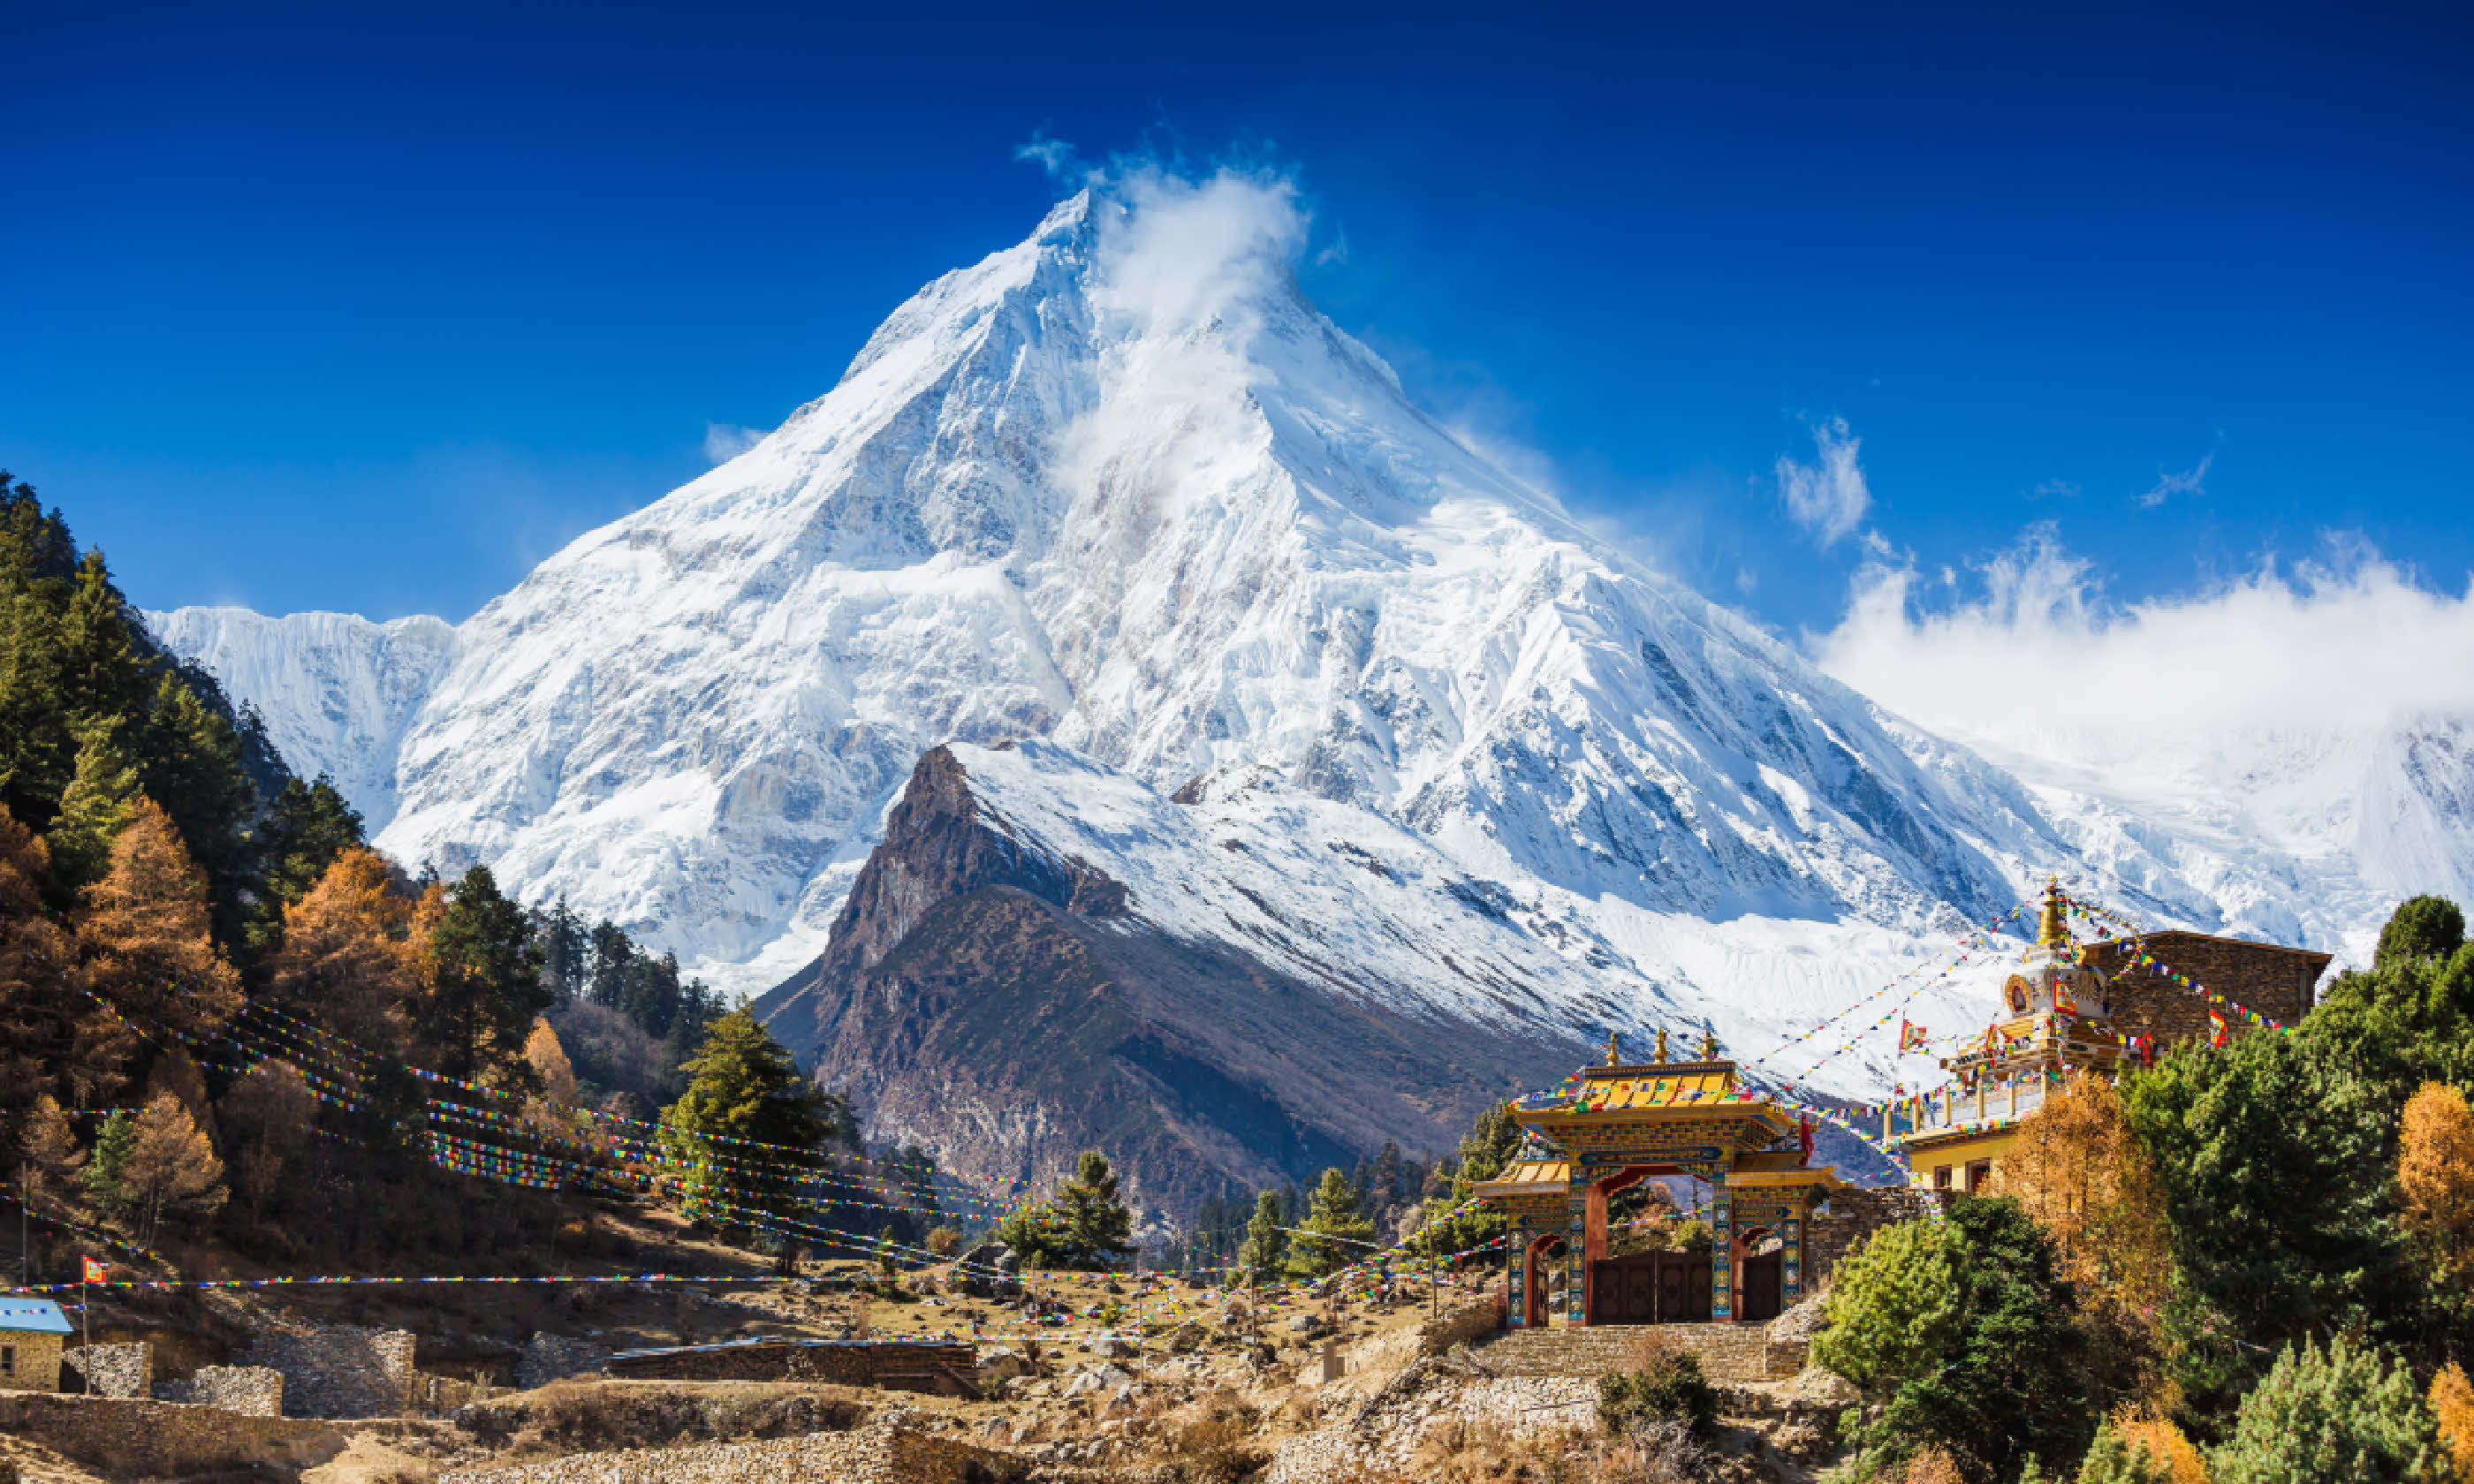 Mt. Manaslu in Himalayas, Nepal (Shutterstock: see credit below)